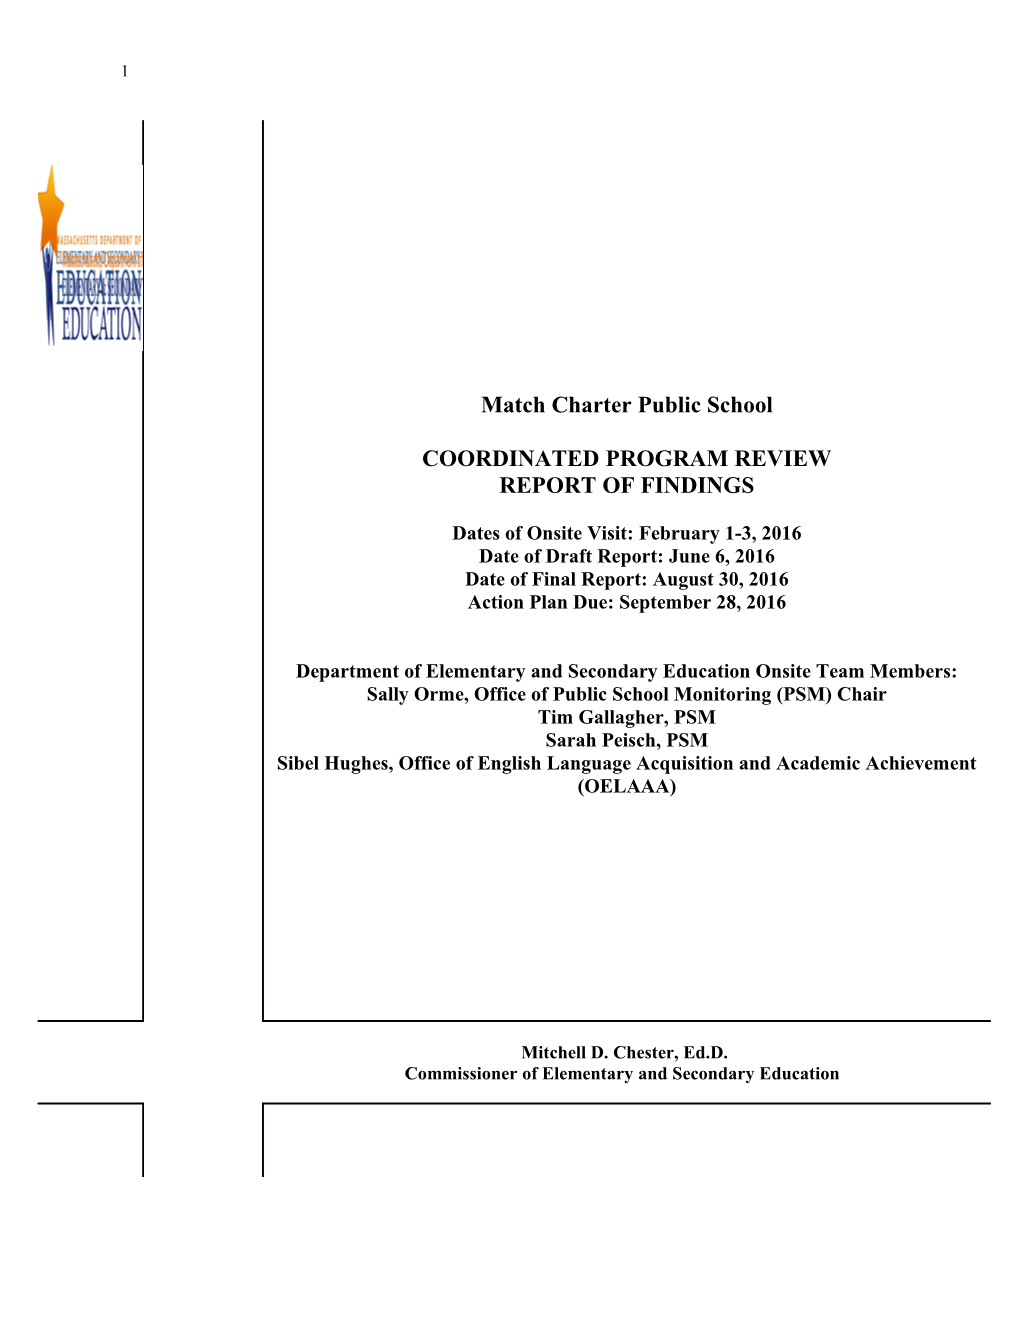 MATCH Charter School CPR Final Report 2016